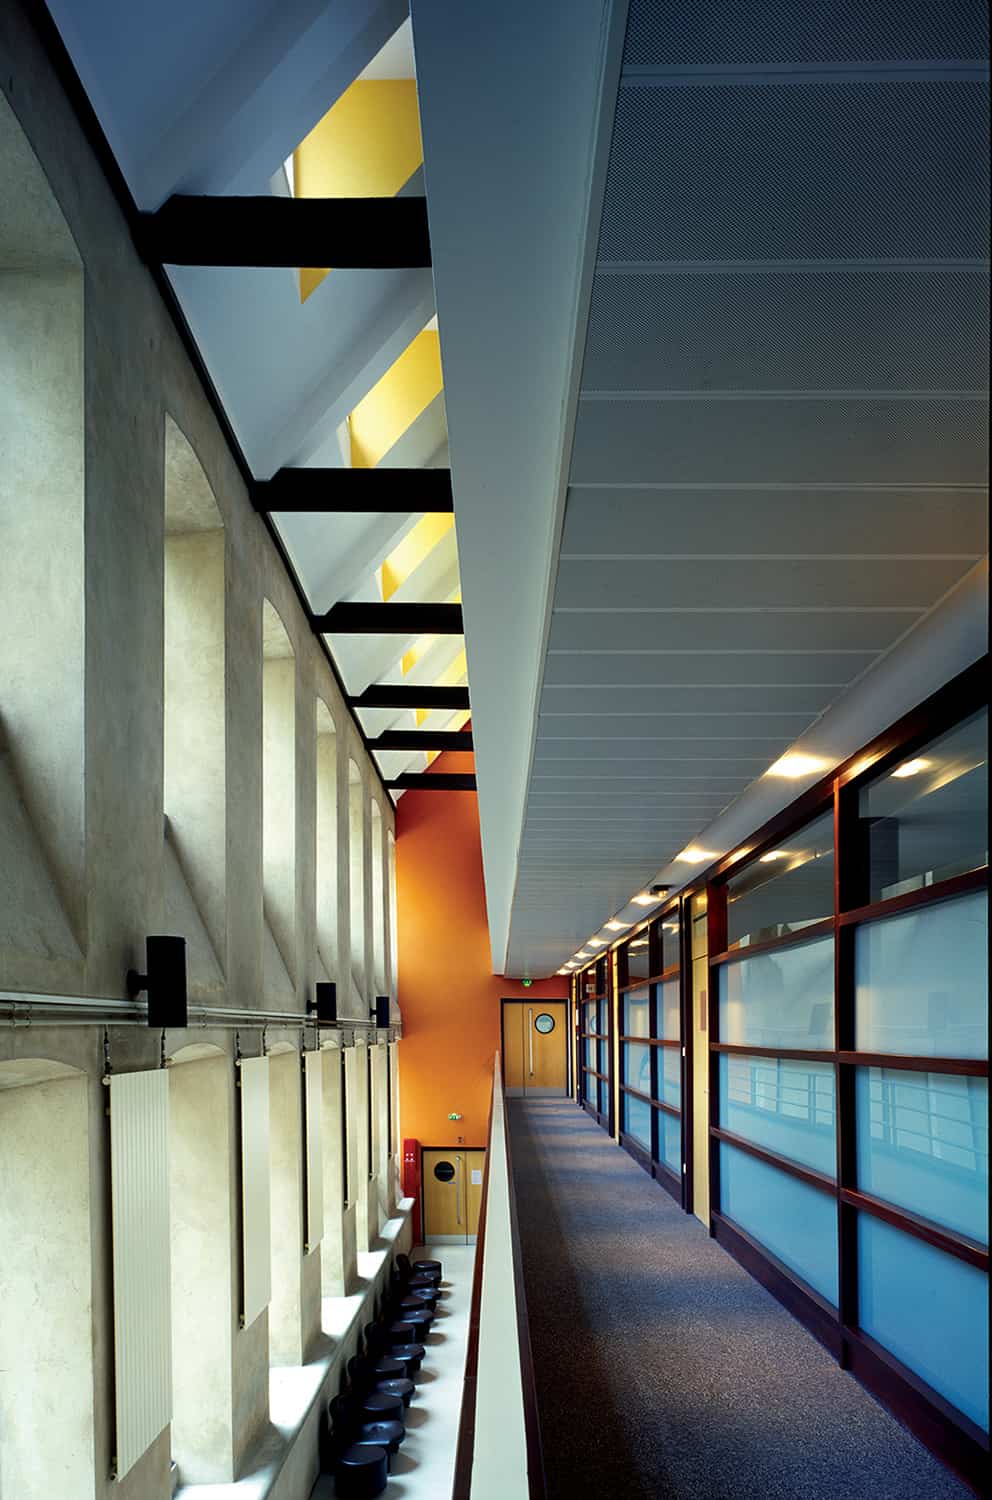 photographie d'architecture d'un couloir éclairé à l'intérieur d'un bâtiment © francois nussbaumer